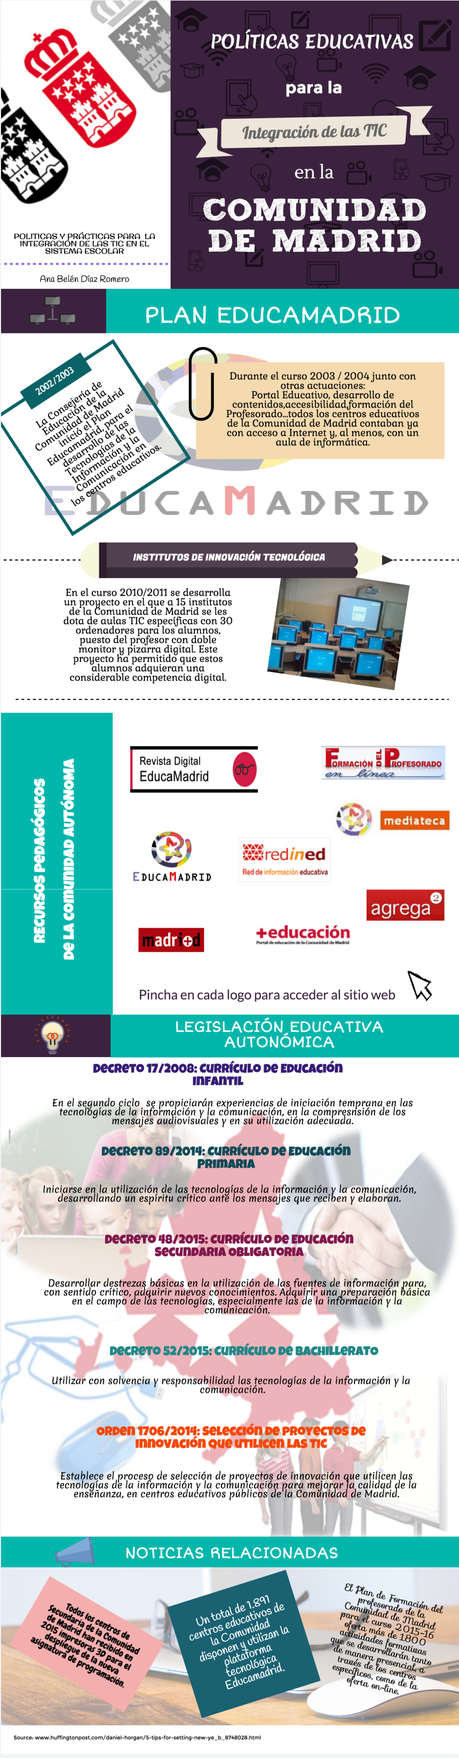 Políticas educativas para integrar las TIC en la Comunidad de Madrid